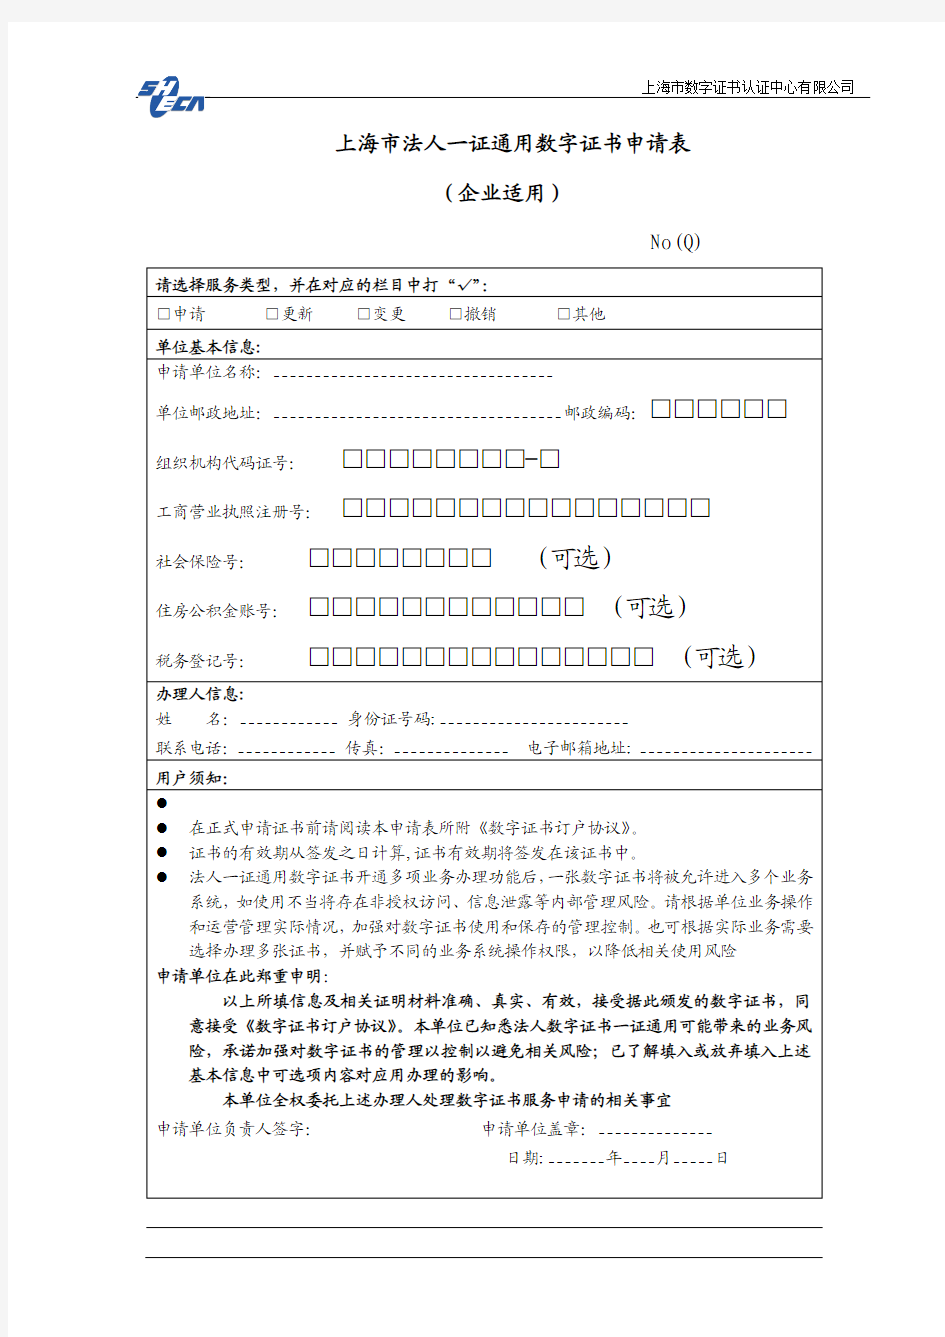 上海市一证通用法人数字证书申请表(企业法人)